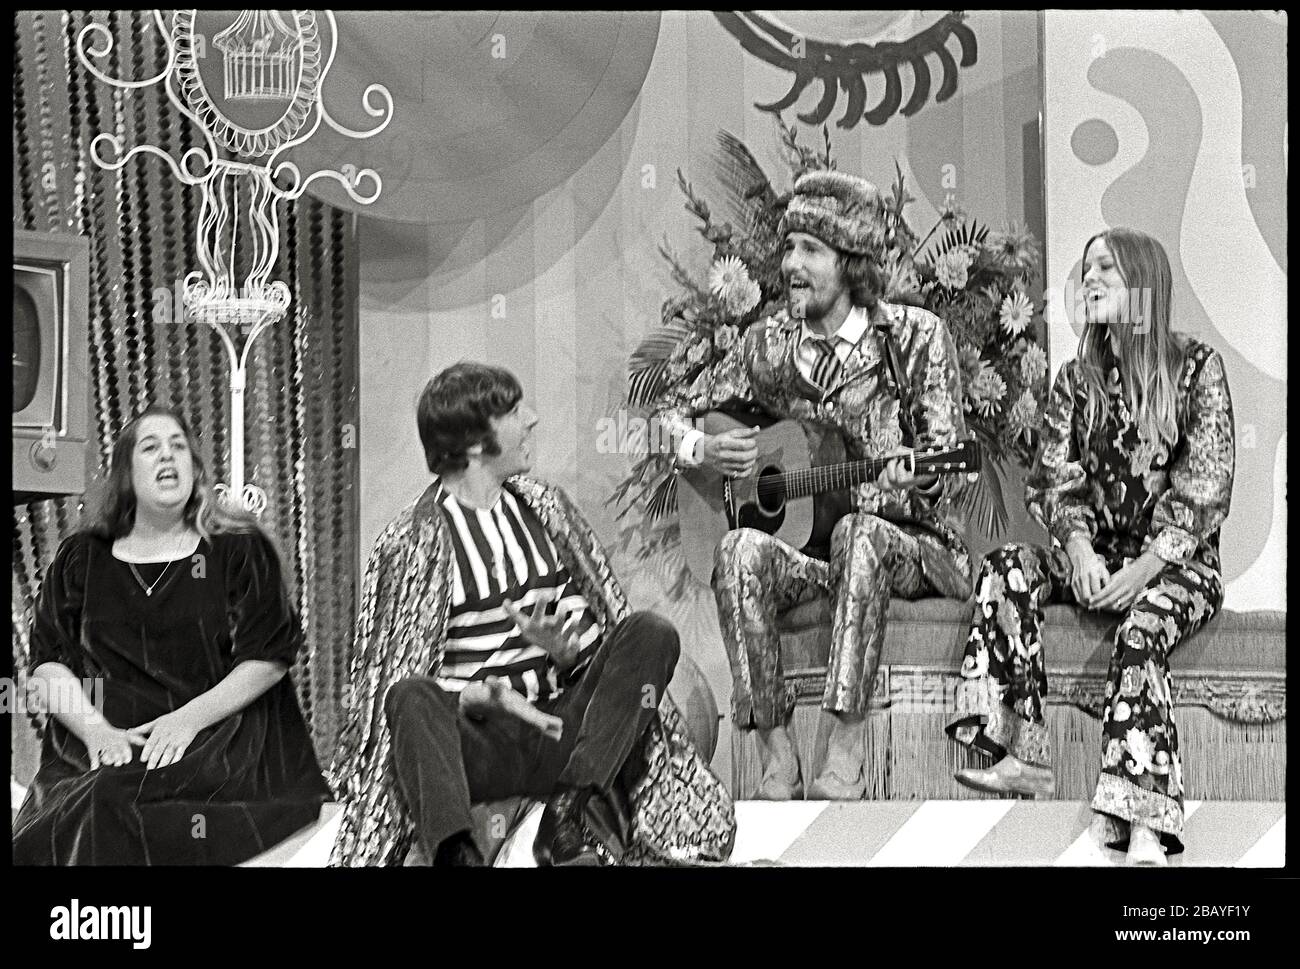 Singende Popgruppe, Mamas & Papas. Cass Elliot, Denny Doherty, John Phillips und Michelle Phillips treten in Ed Sullivan Show am 24. September 1967 auf. Bild von 35 mm negativ. Stockfoto